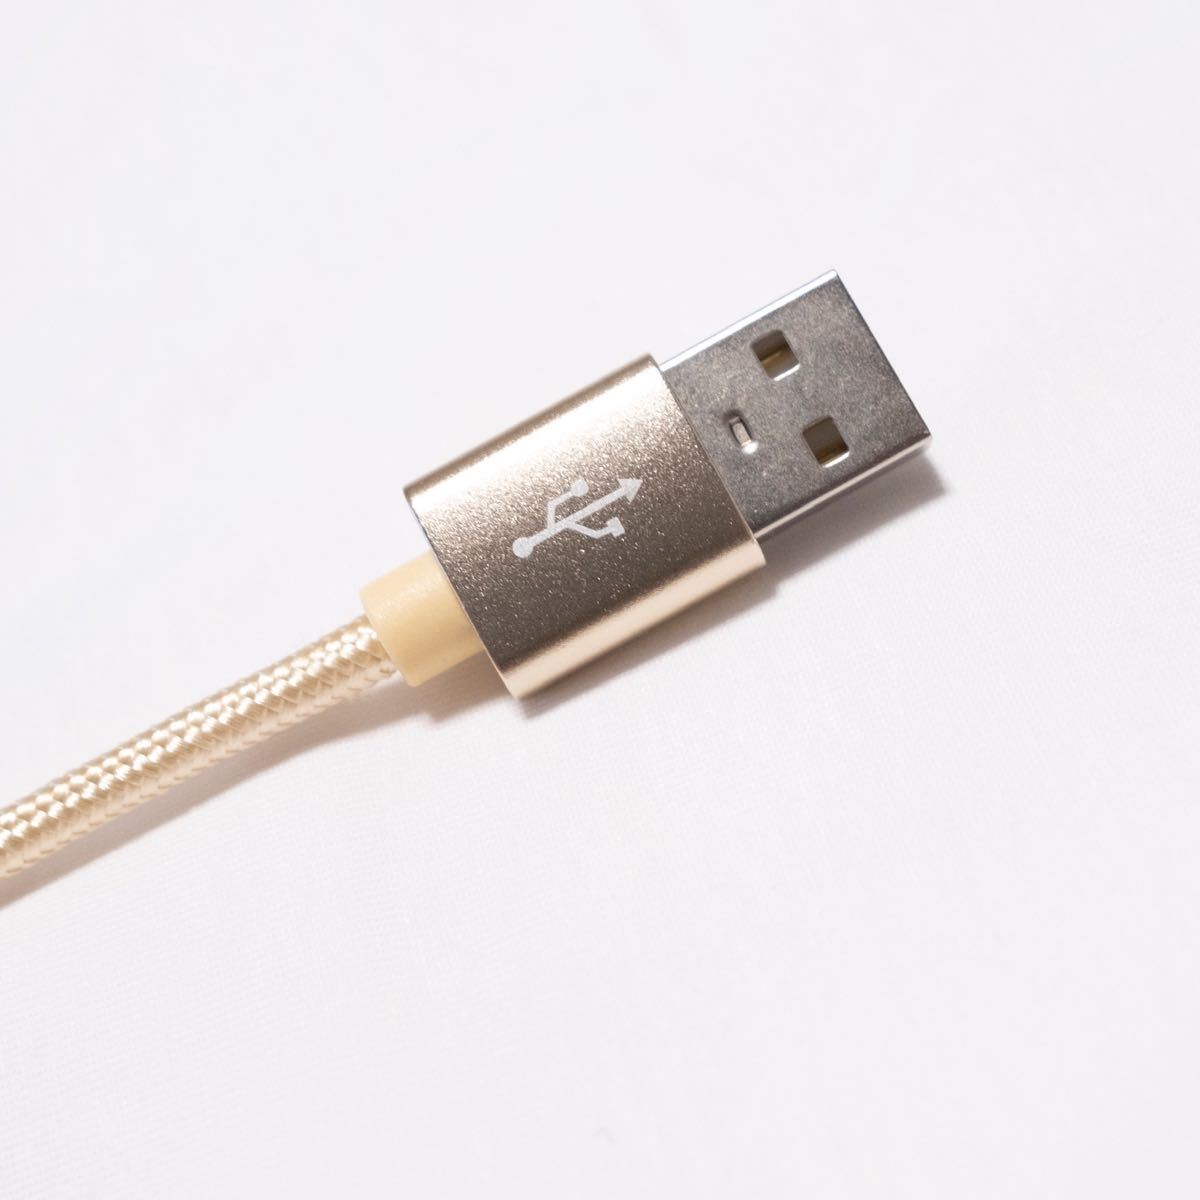 急速充電 充電器 アイホン 断線防止 Lightningケーブル USBケーブル ライトニングケーブル アイフォン iPad 